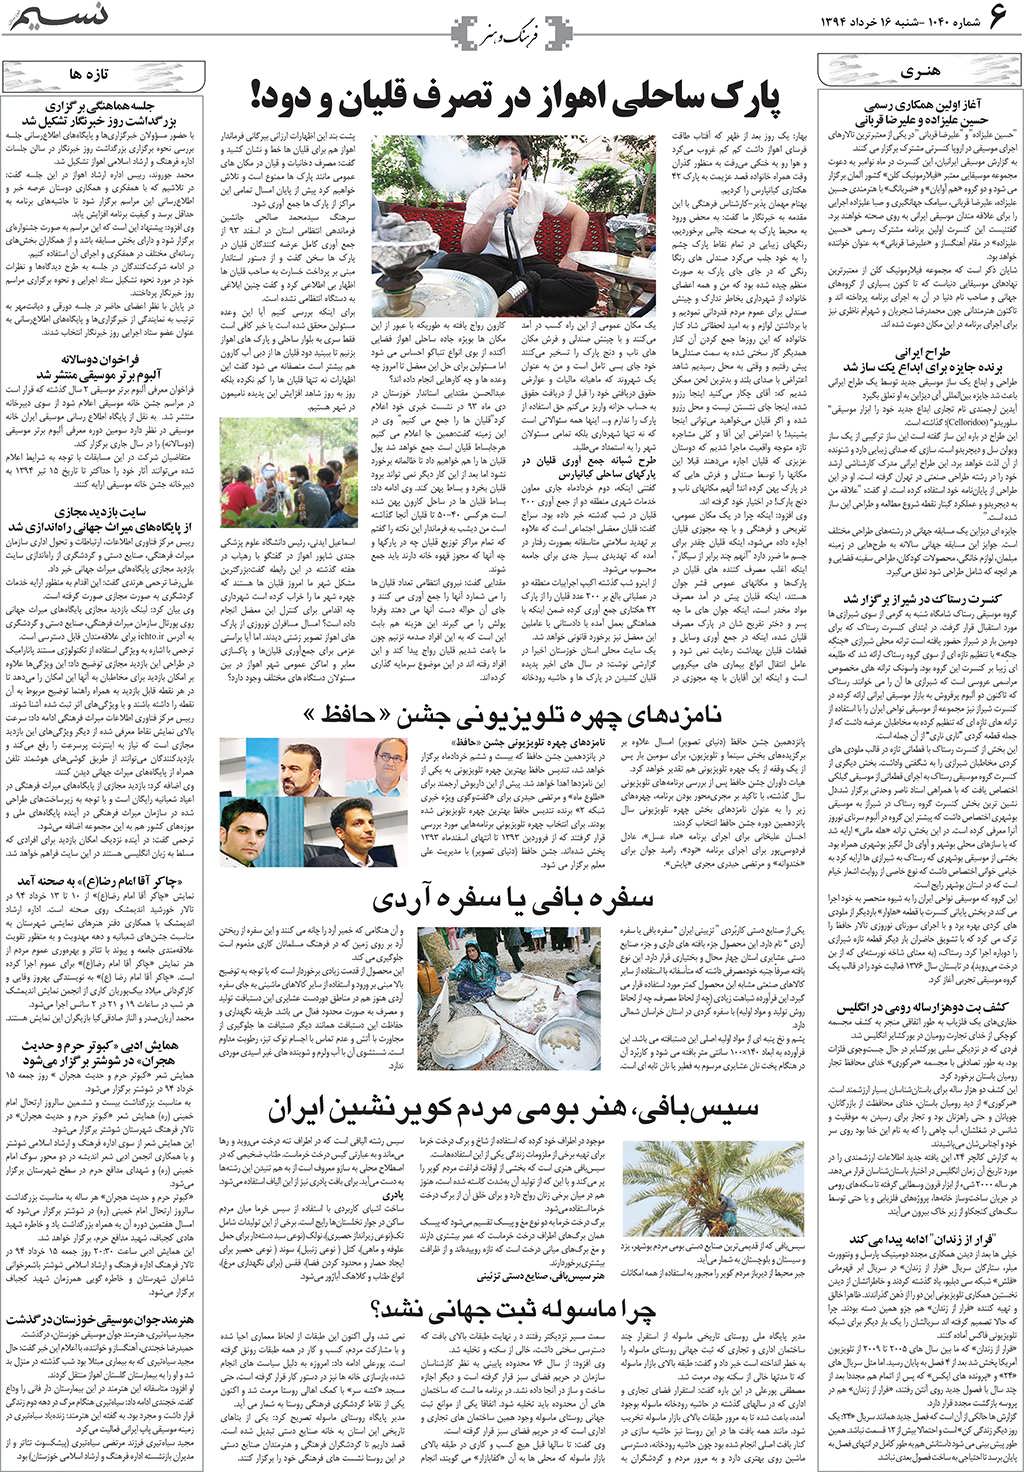 صفحه فرهنگ و هنر روزنامه نسیم شماره 1040